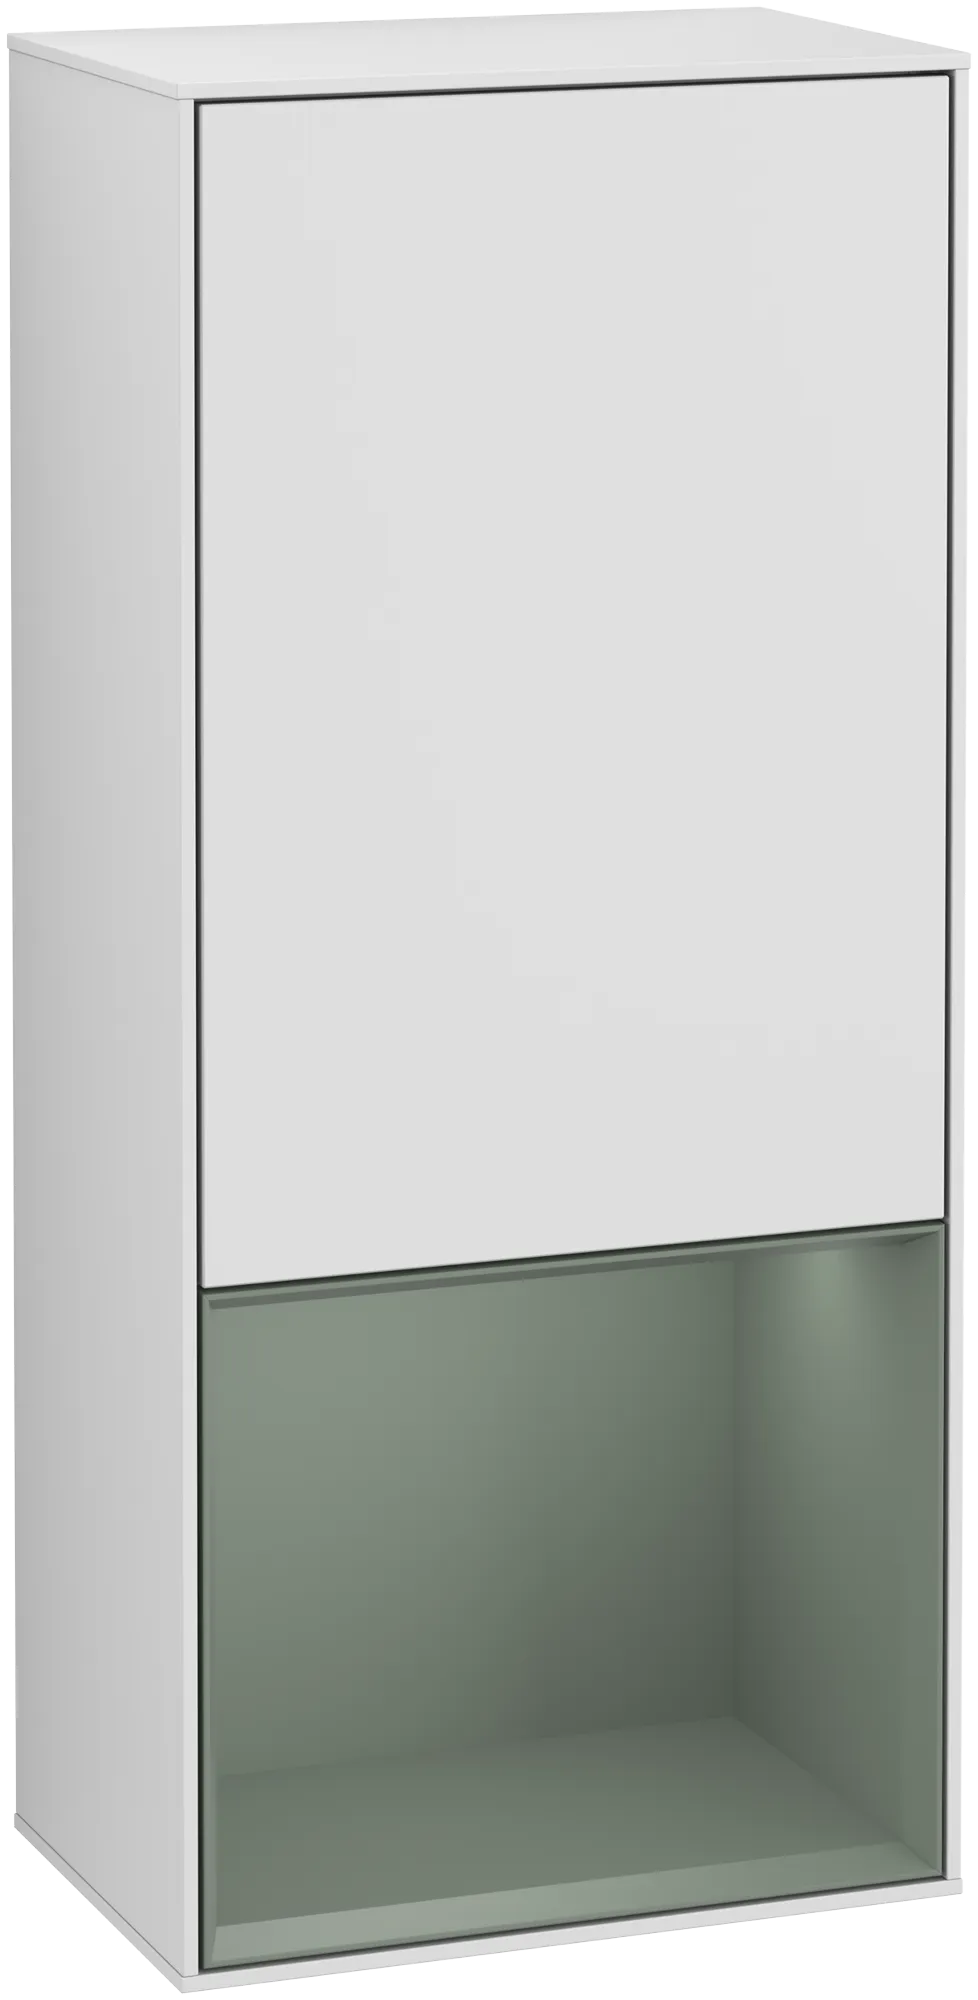 Bild von VILLEROY BOCH Finion Seitenschrank, mit Beleuchtung, 1 Tür, 418 x 936 x 270 mm, White Matt Lacquer / Olive Matt Lacquer #G550GMMT